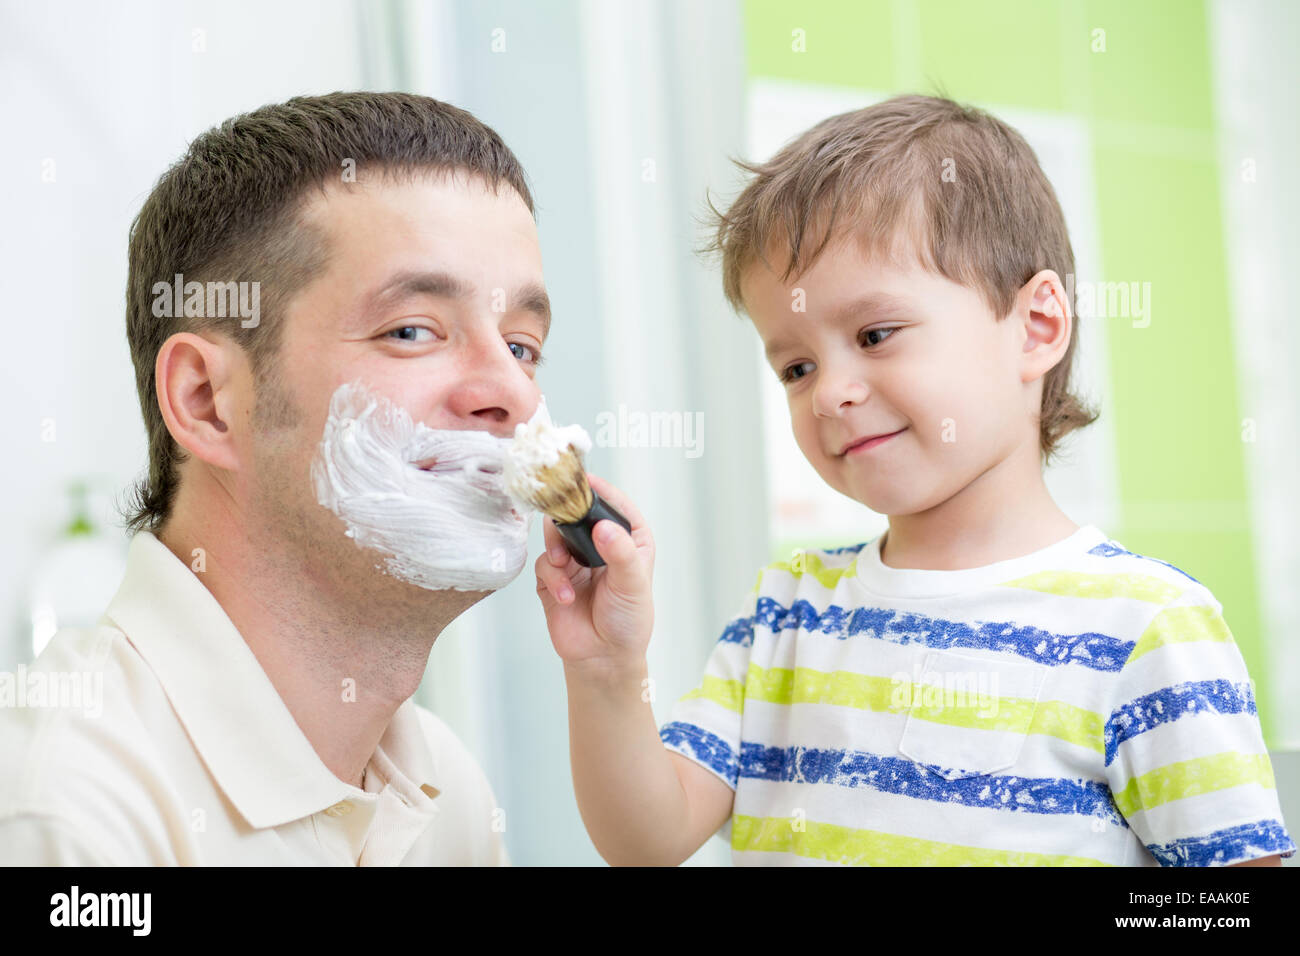 L'observation d'un enfant d'âge préscolaire le rasage de son père Banque D'Images